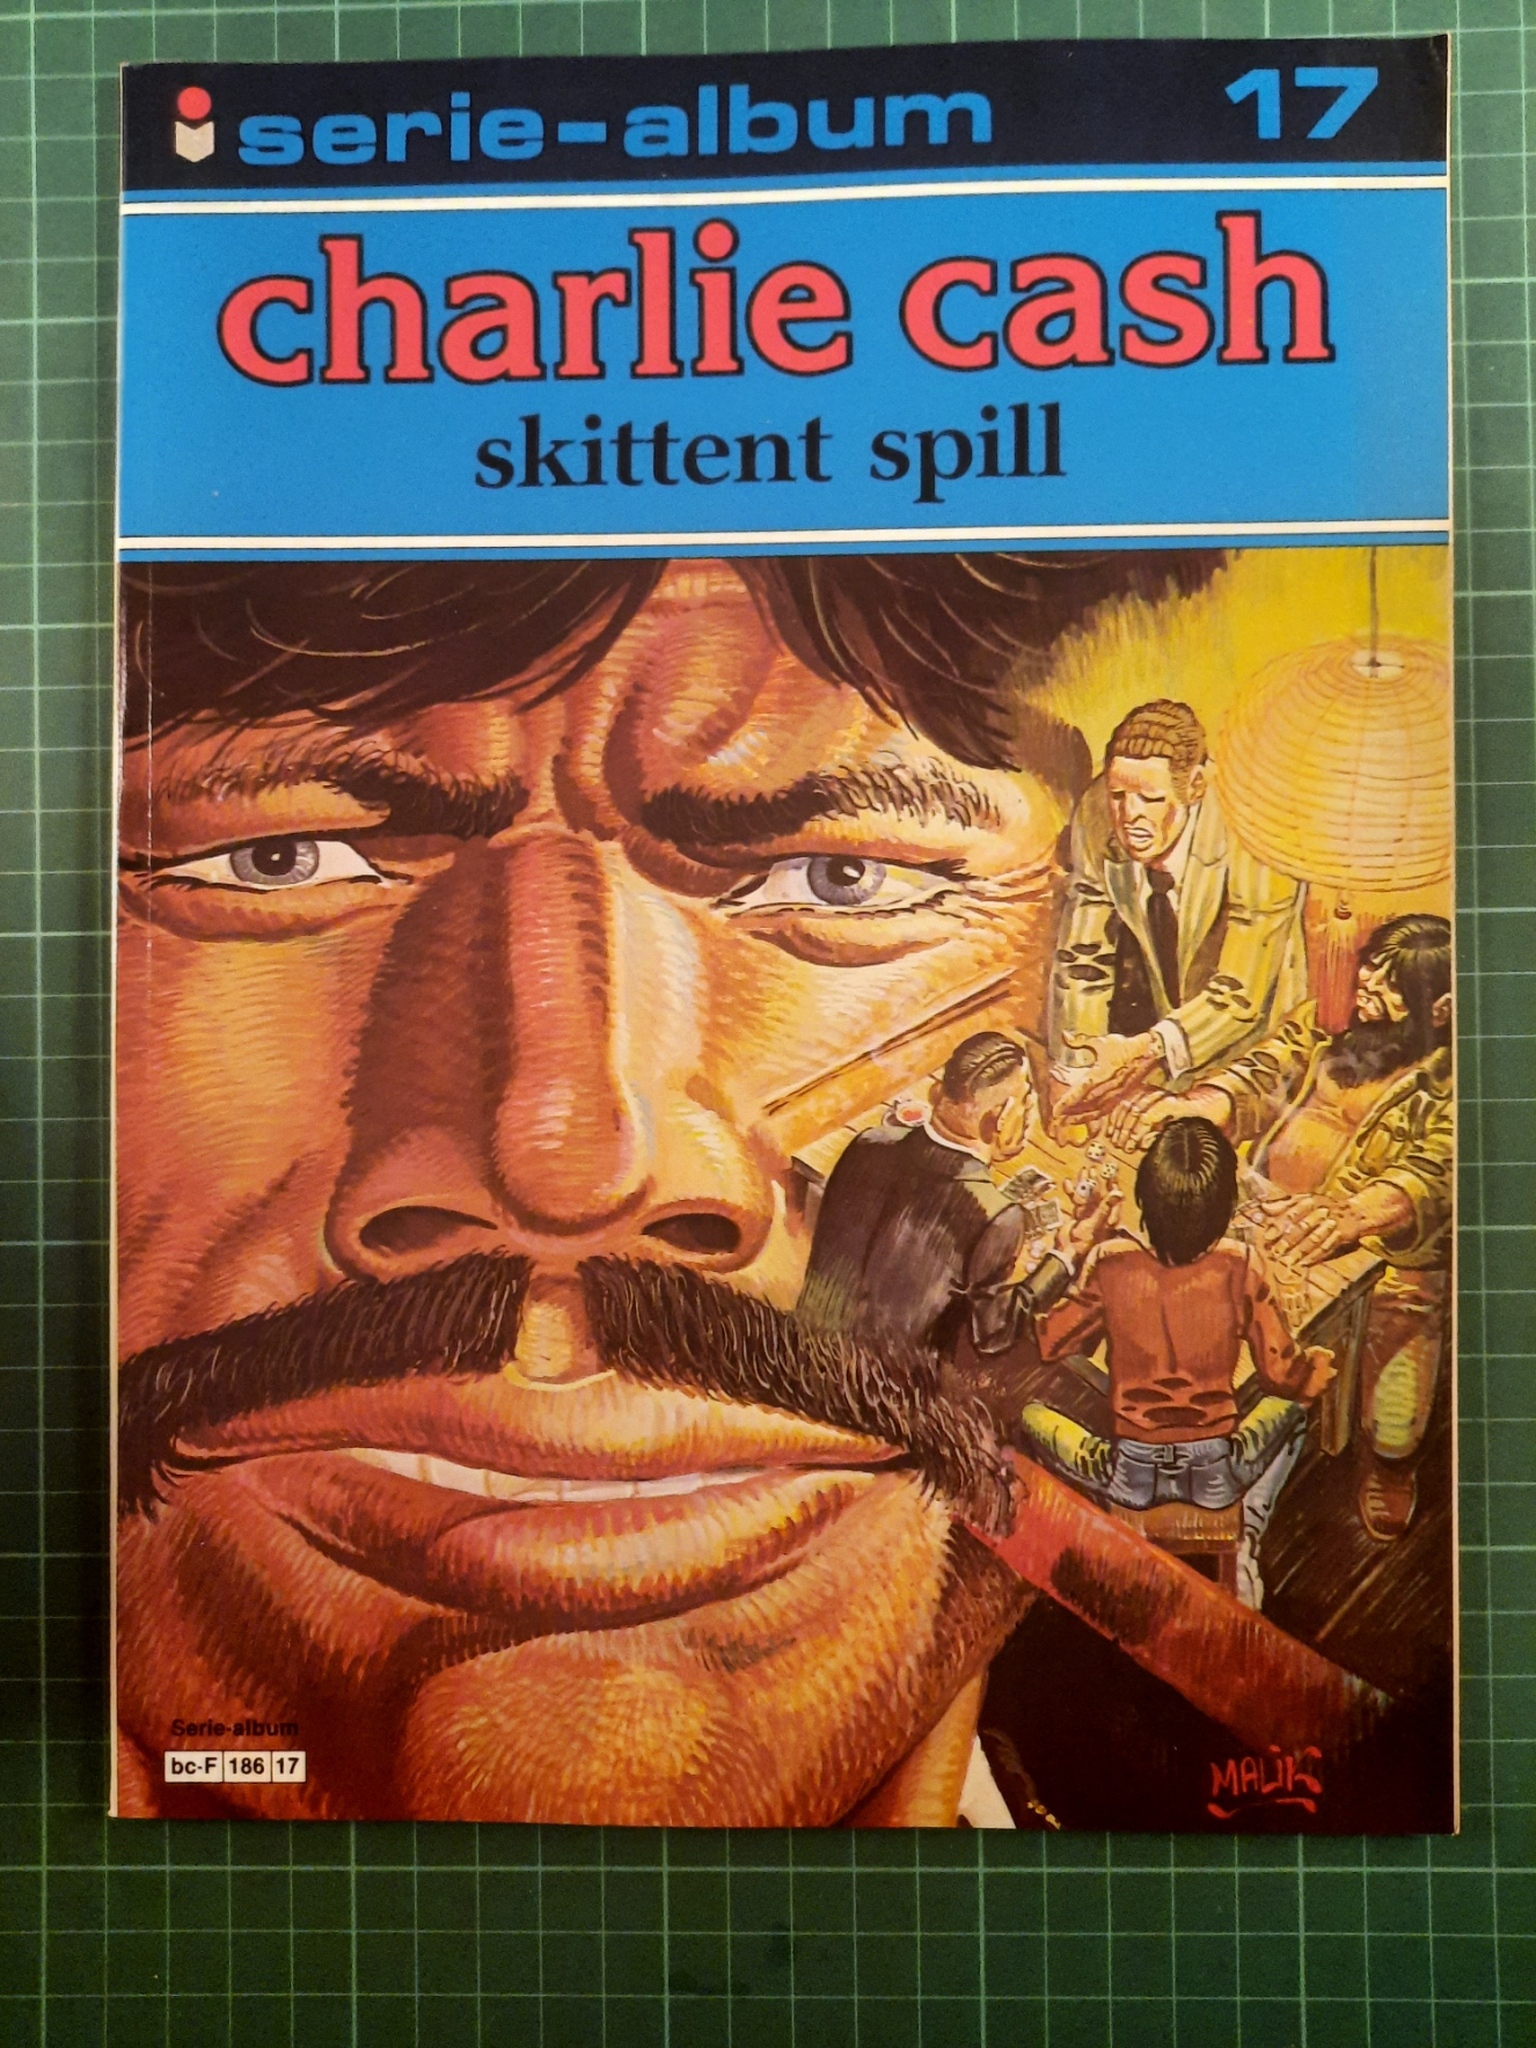 Charlie Cash: Skittent spill